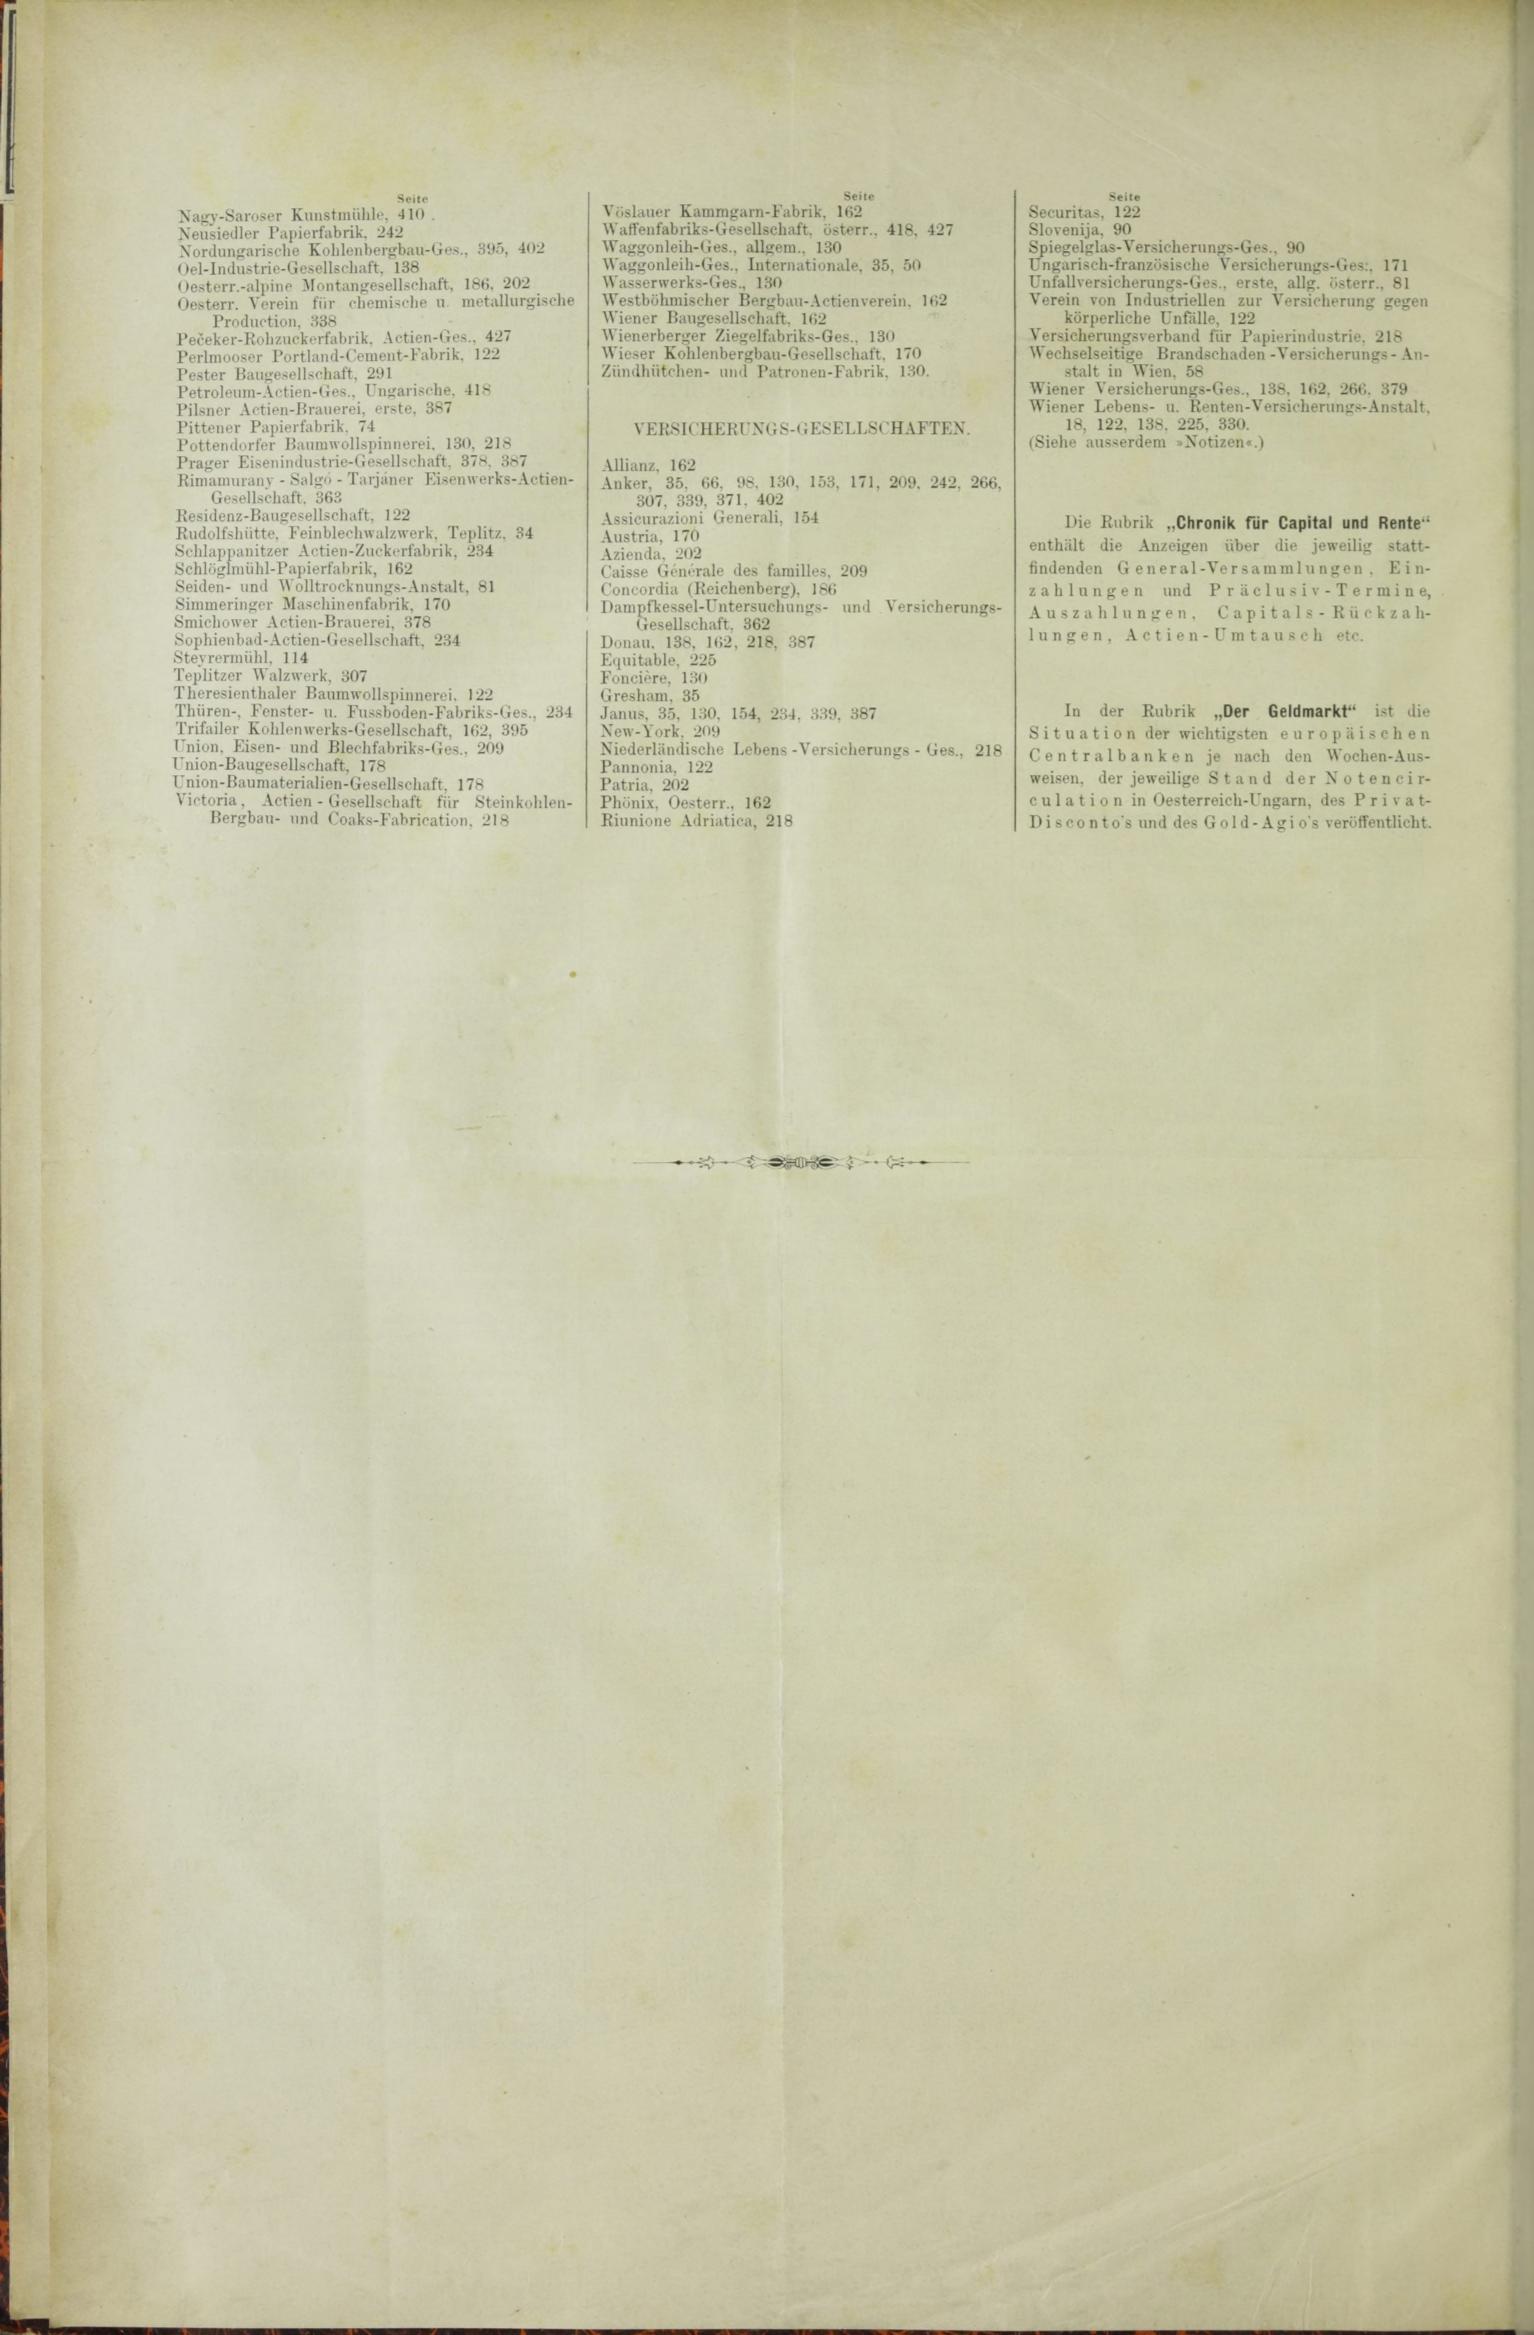 Der Tresor 15.01.1885 - Seite 12